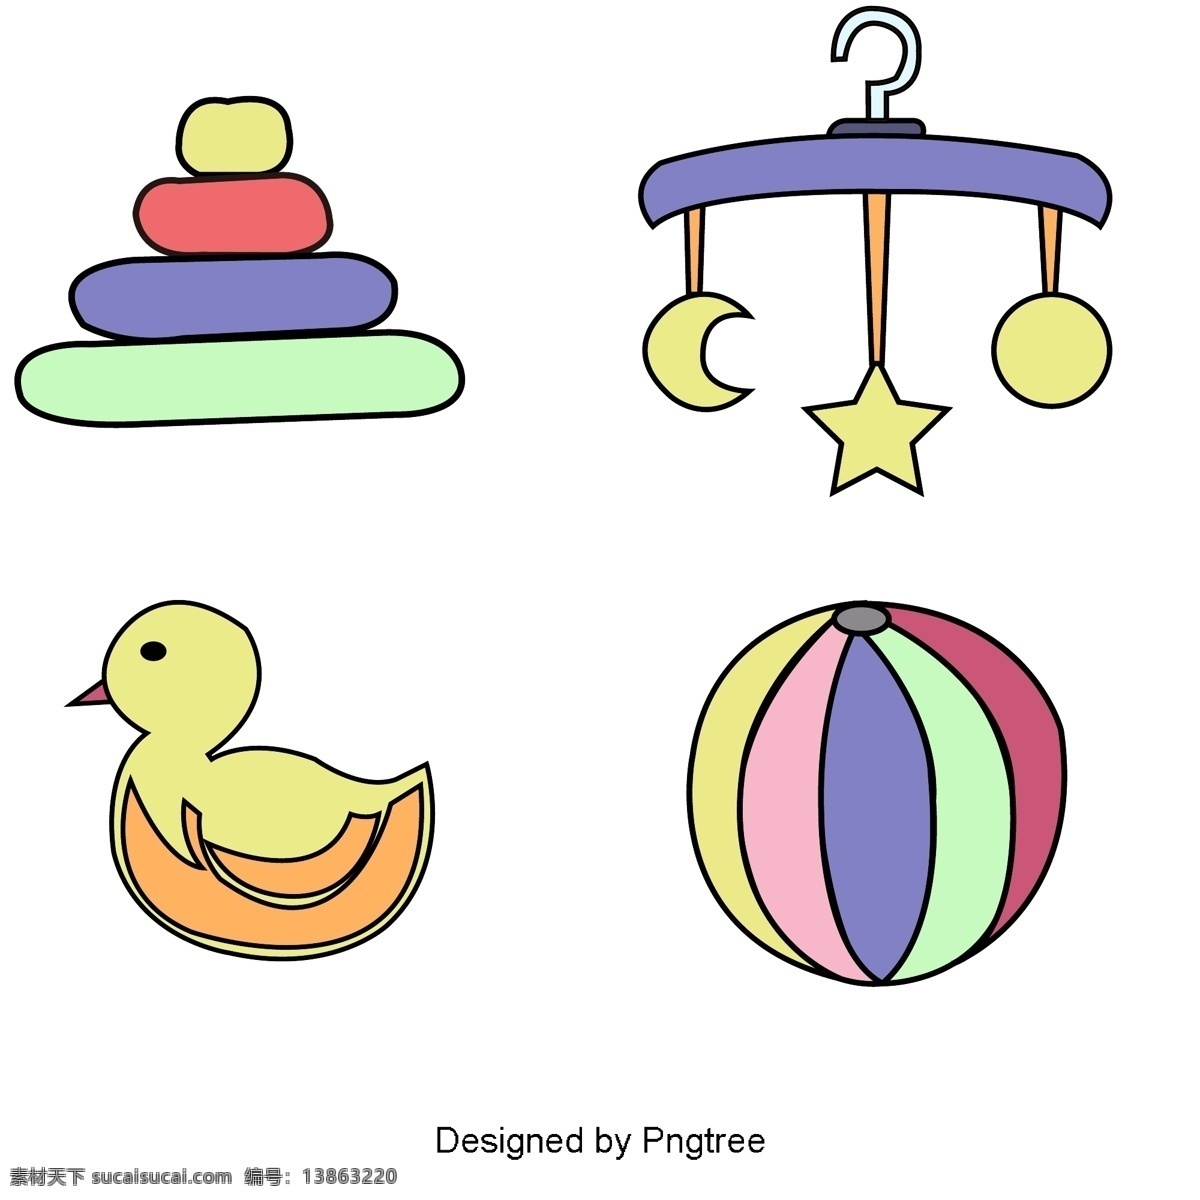 简单 卡通 婴儿用品 图案 手 黎明 婴儿 颜色 图形设计 材料供应 可爱 玩具 衣服 元素 风格